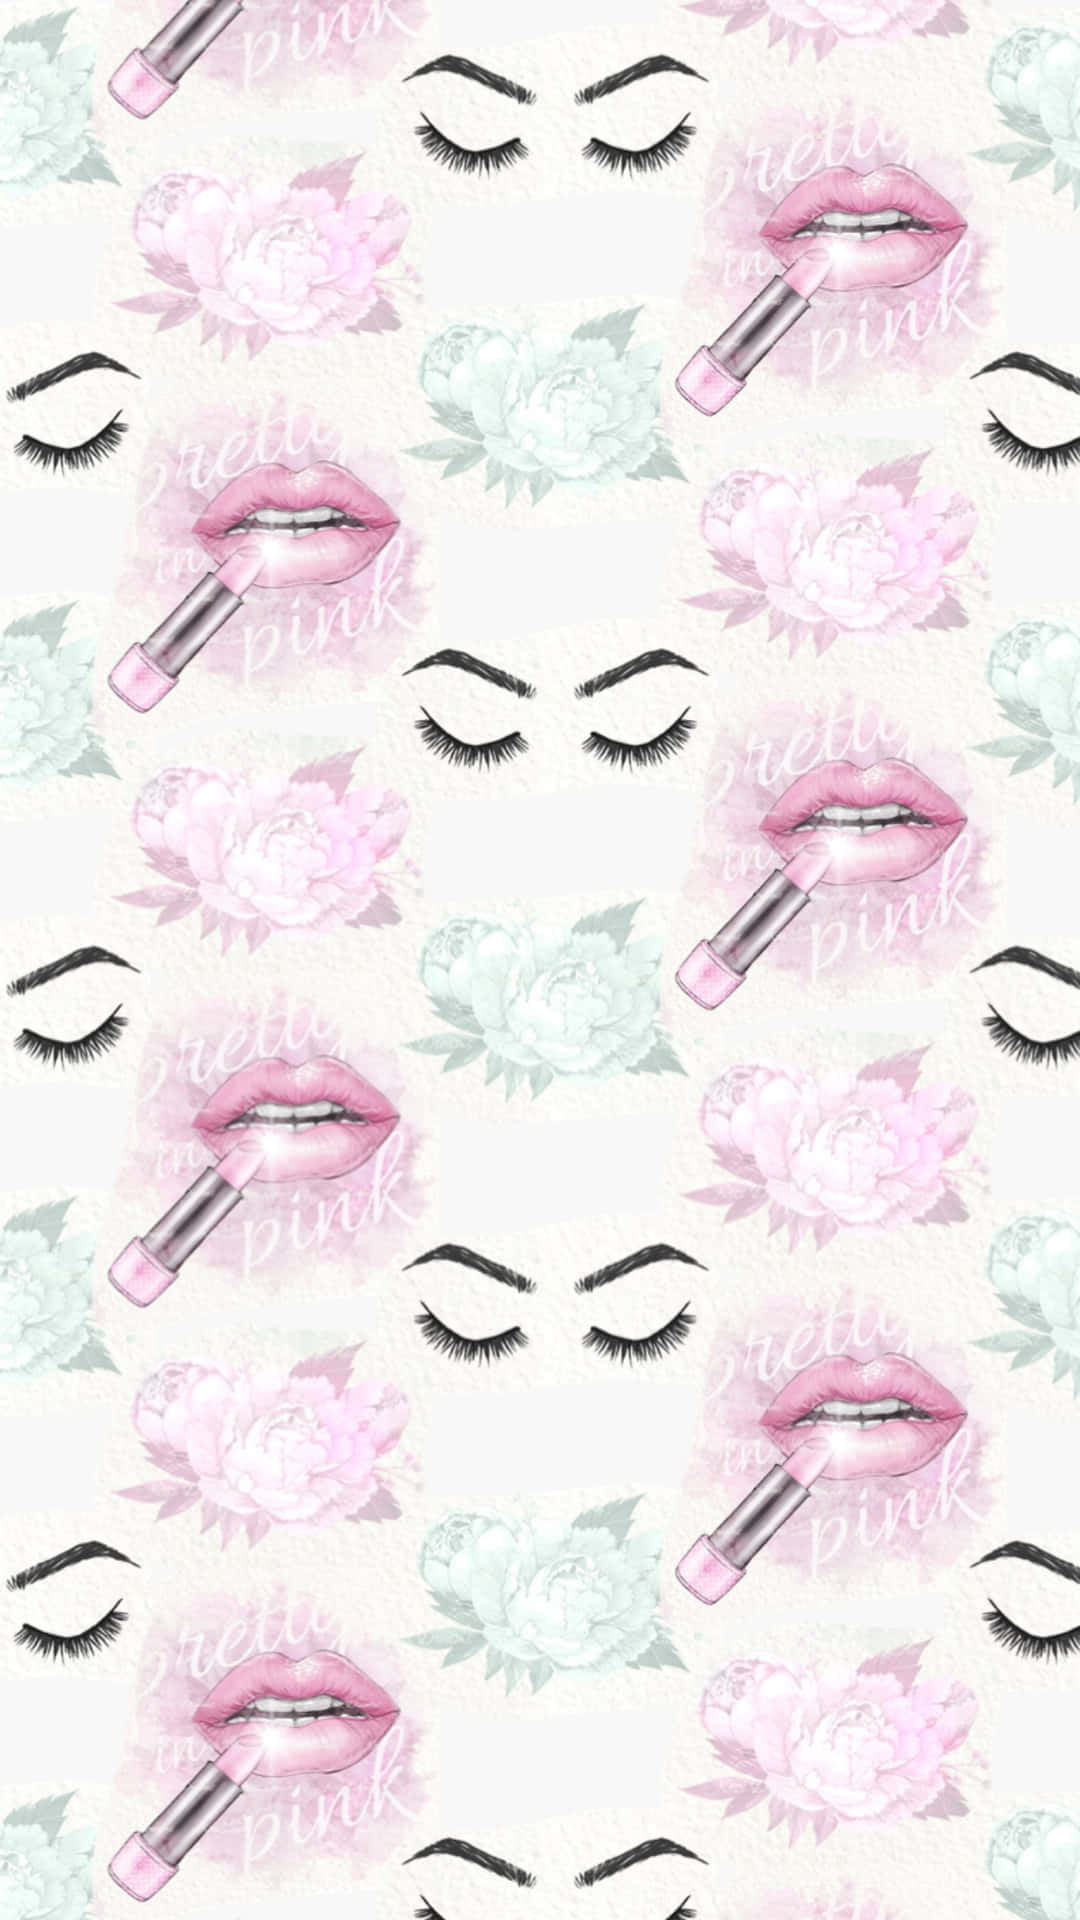 Glamorous Pink Makeup Aesthetic Wallpaper